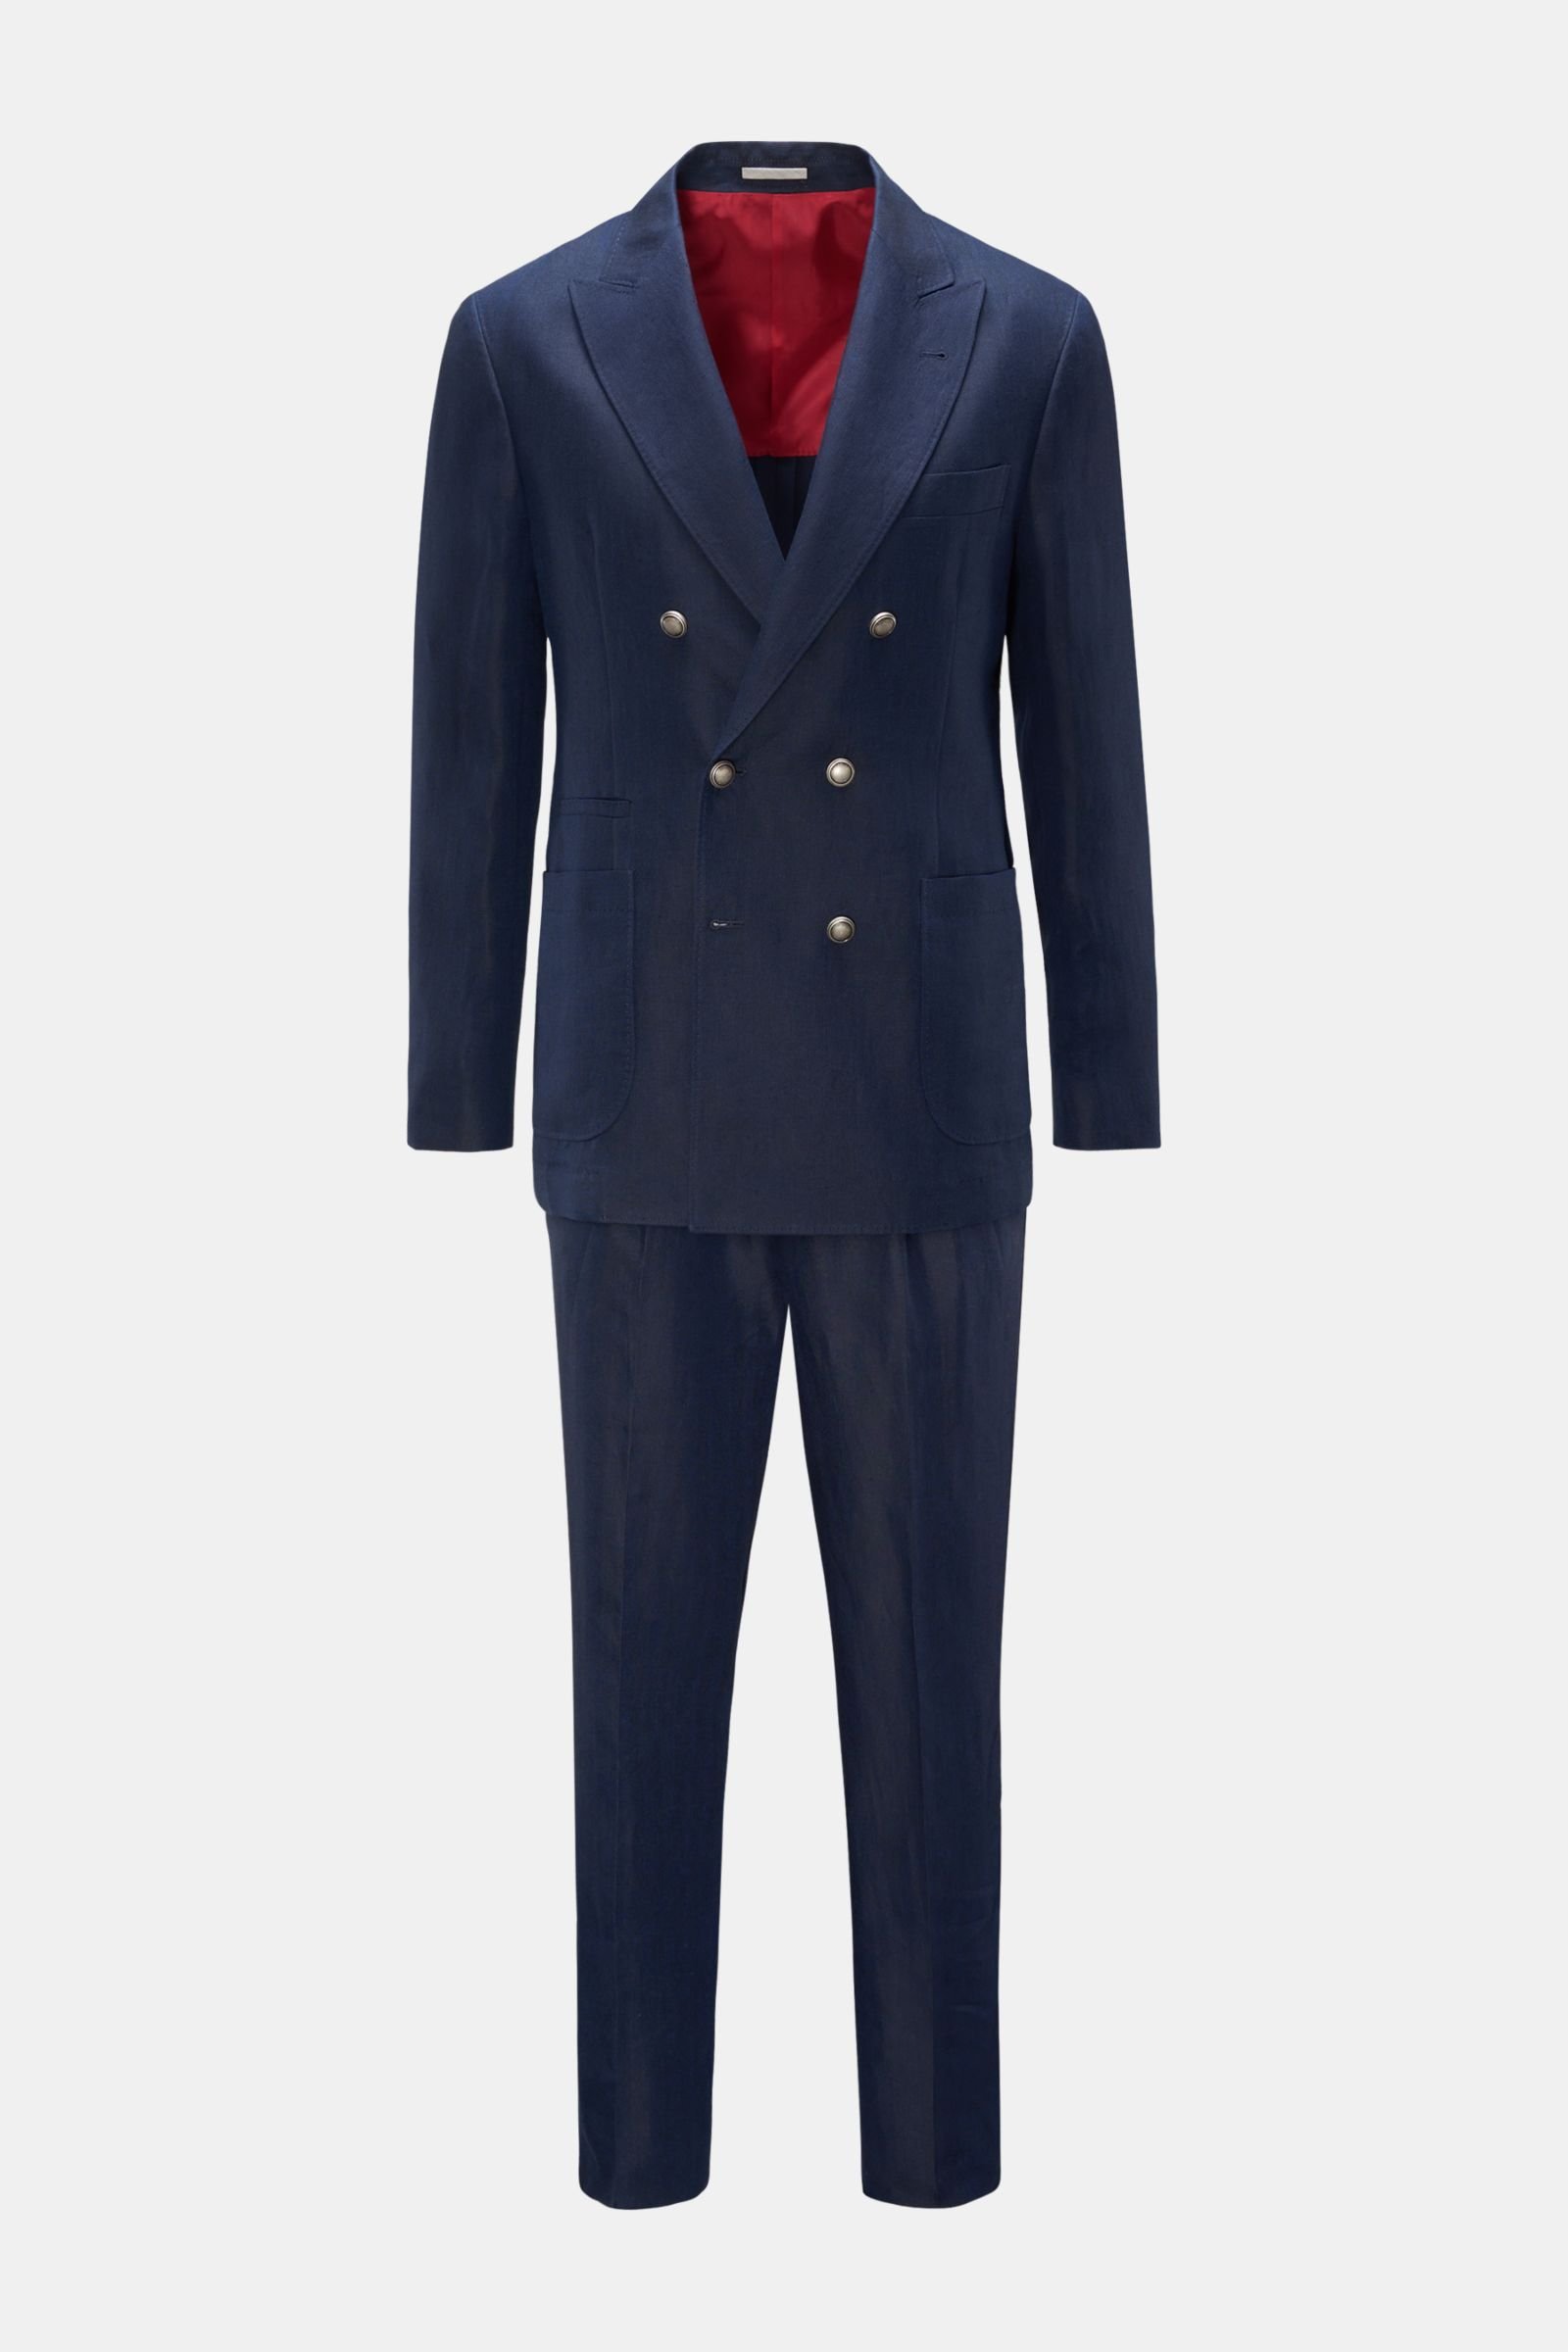 Linen suit navy